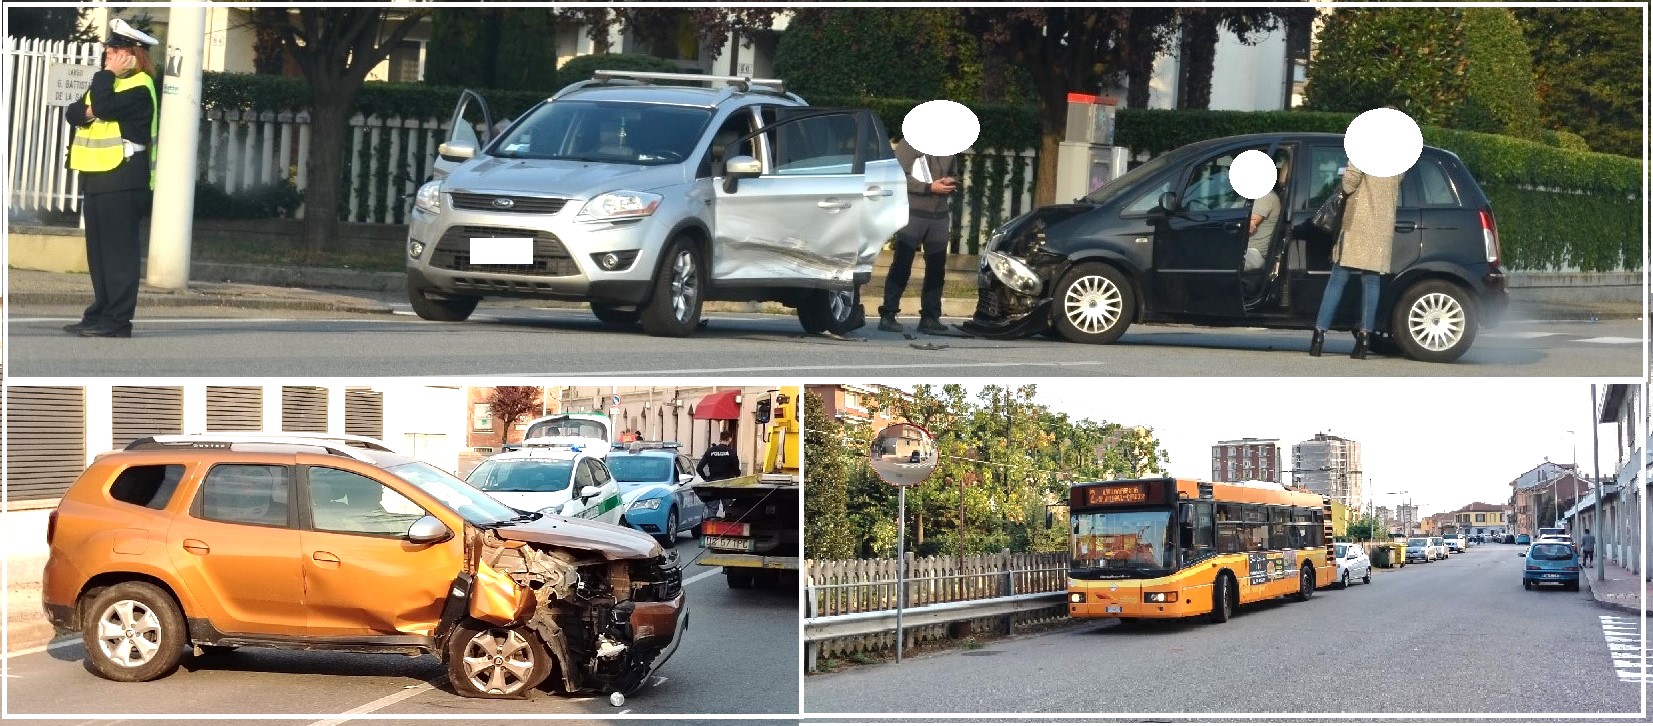 VERCELLI – Tre incidenti stradali nel pomeriggio